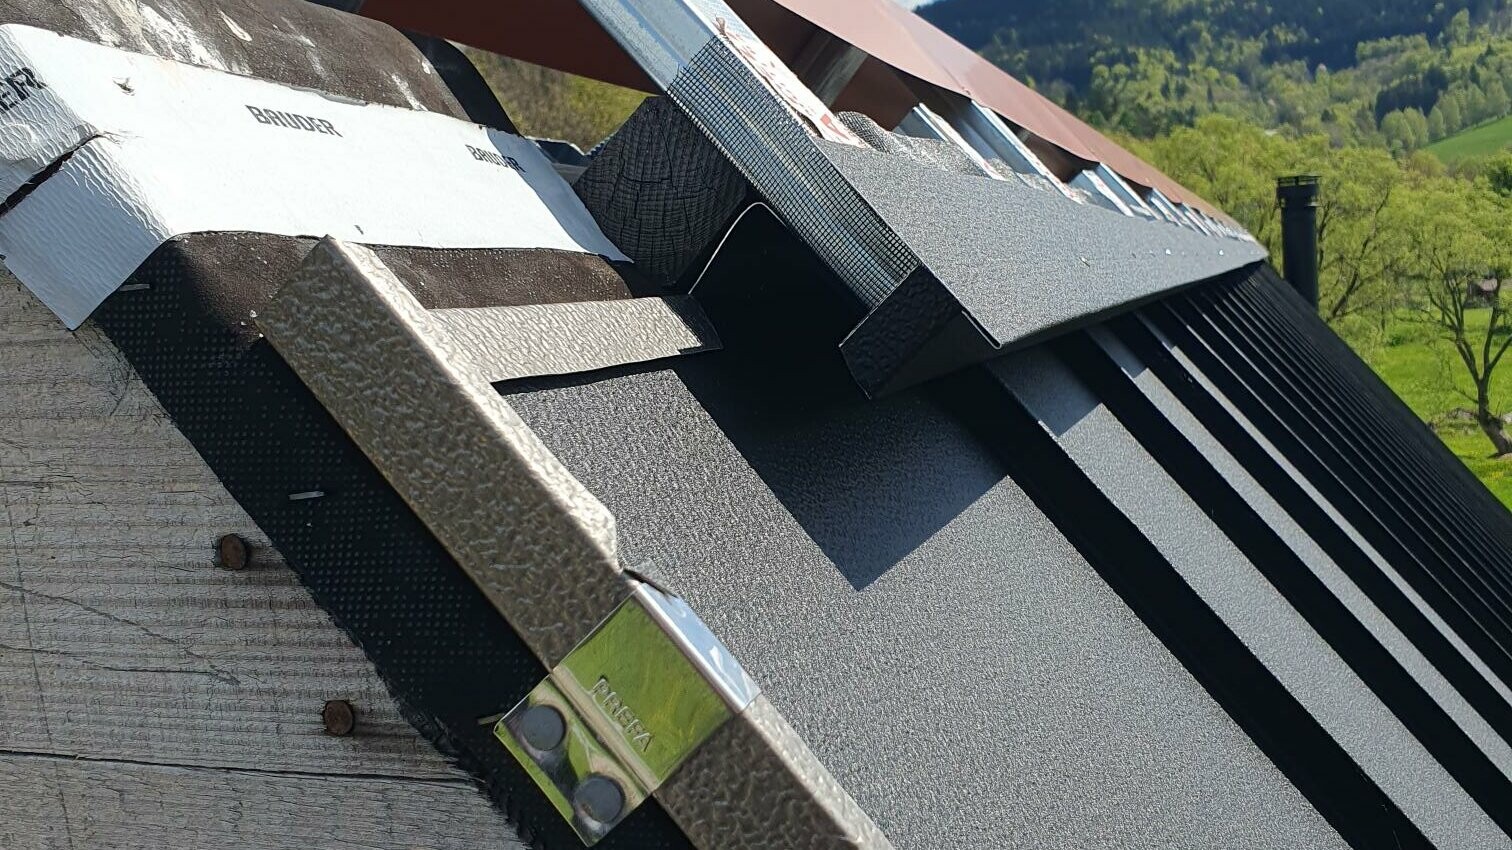 Klempířský detail - hřeben střechy